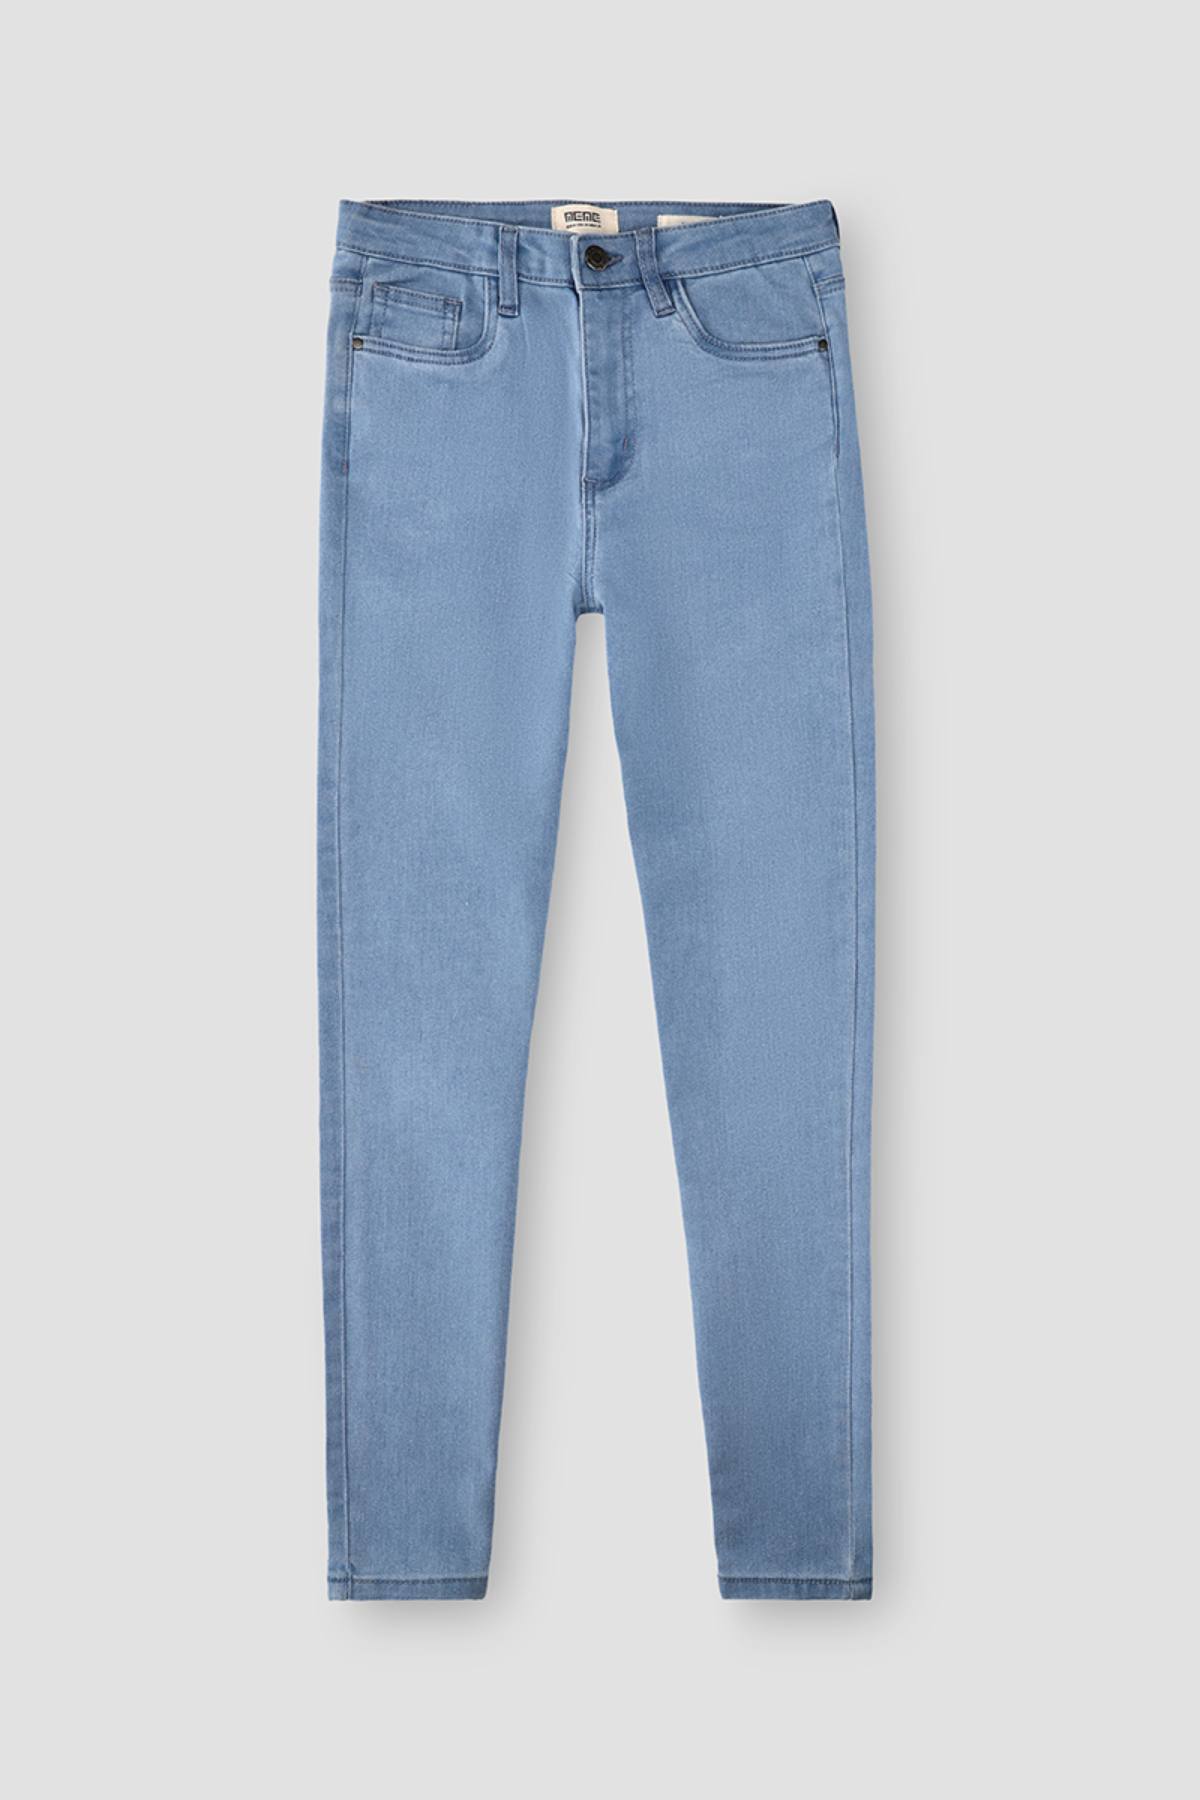 Lige Råd Møntvask Skinny Fit Light Wash Denim Jeans Light Blue – MEME